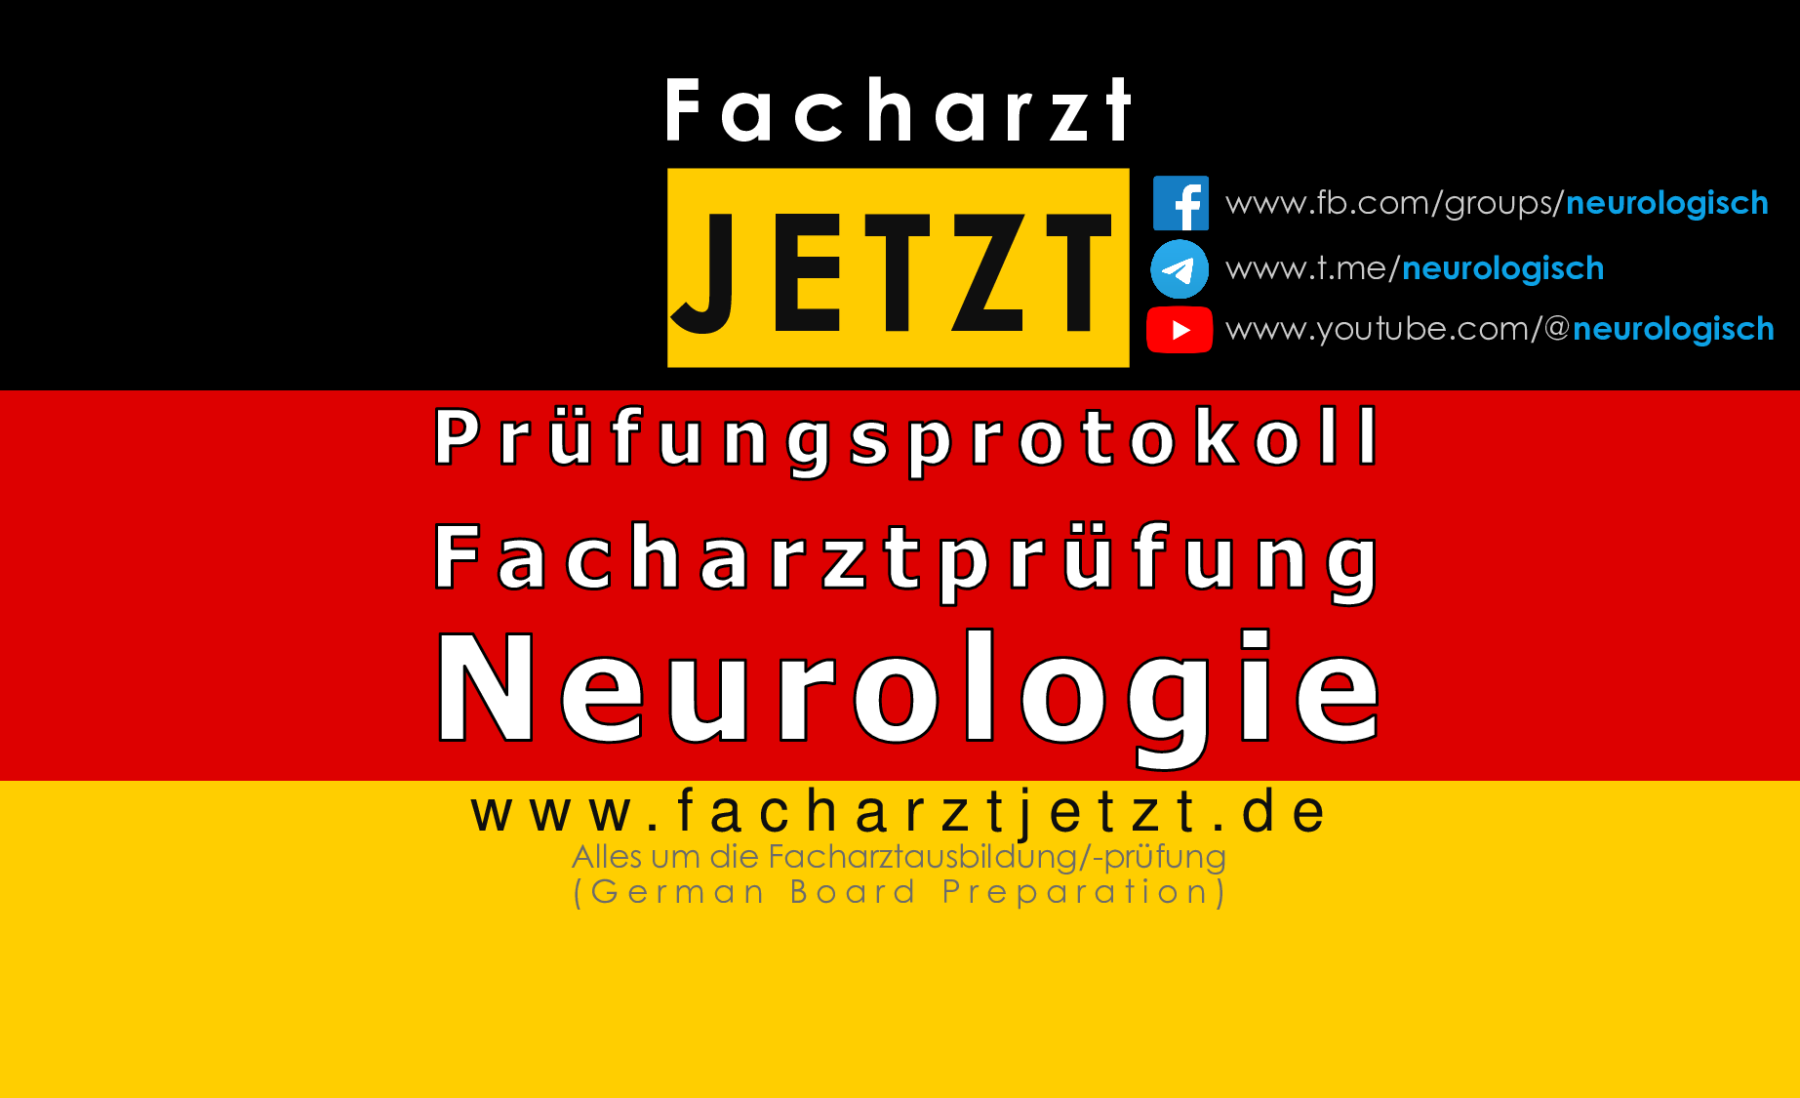 Prüfungsprotokolle - Facharztprüfung Neurologie